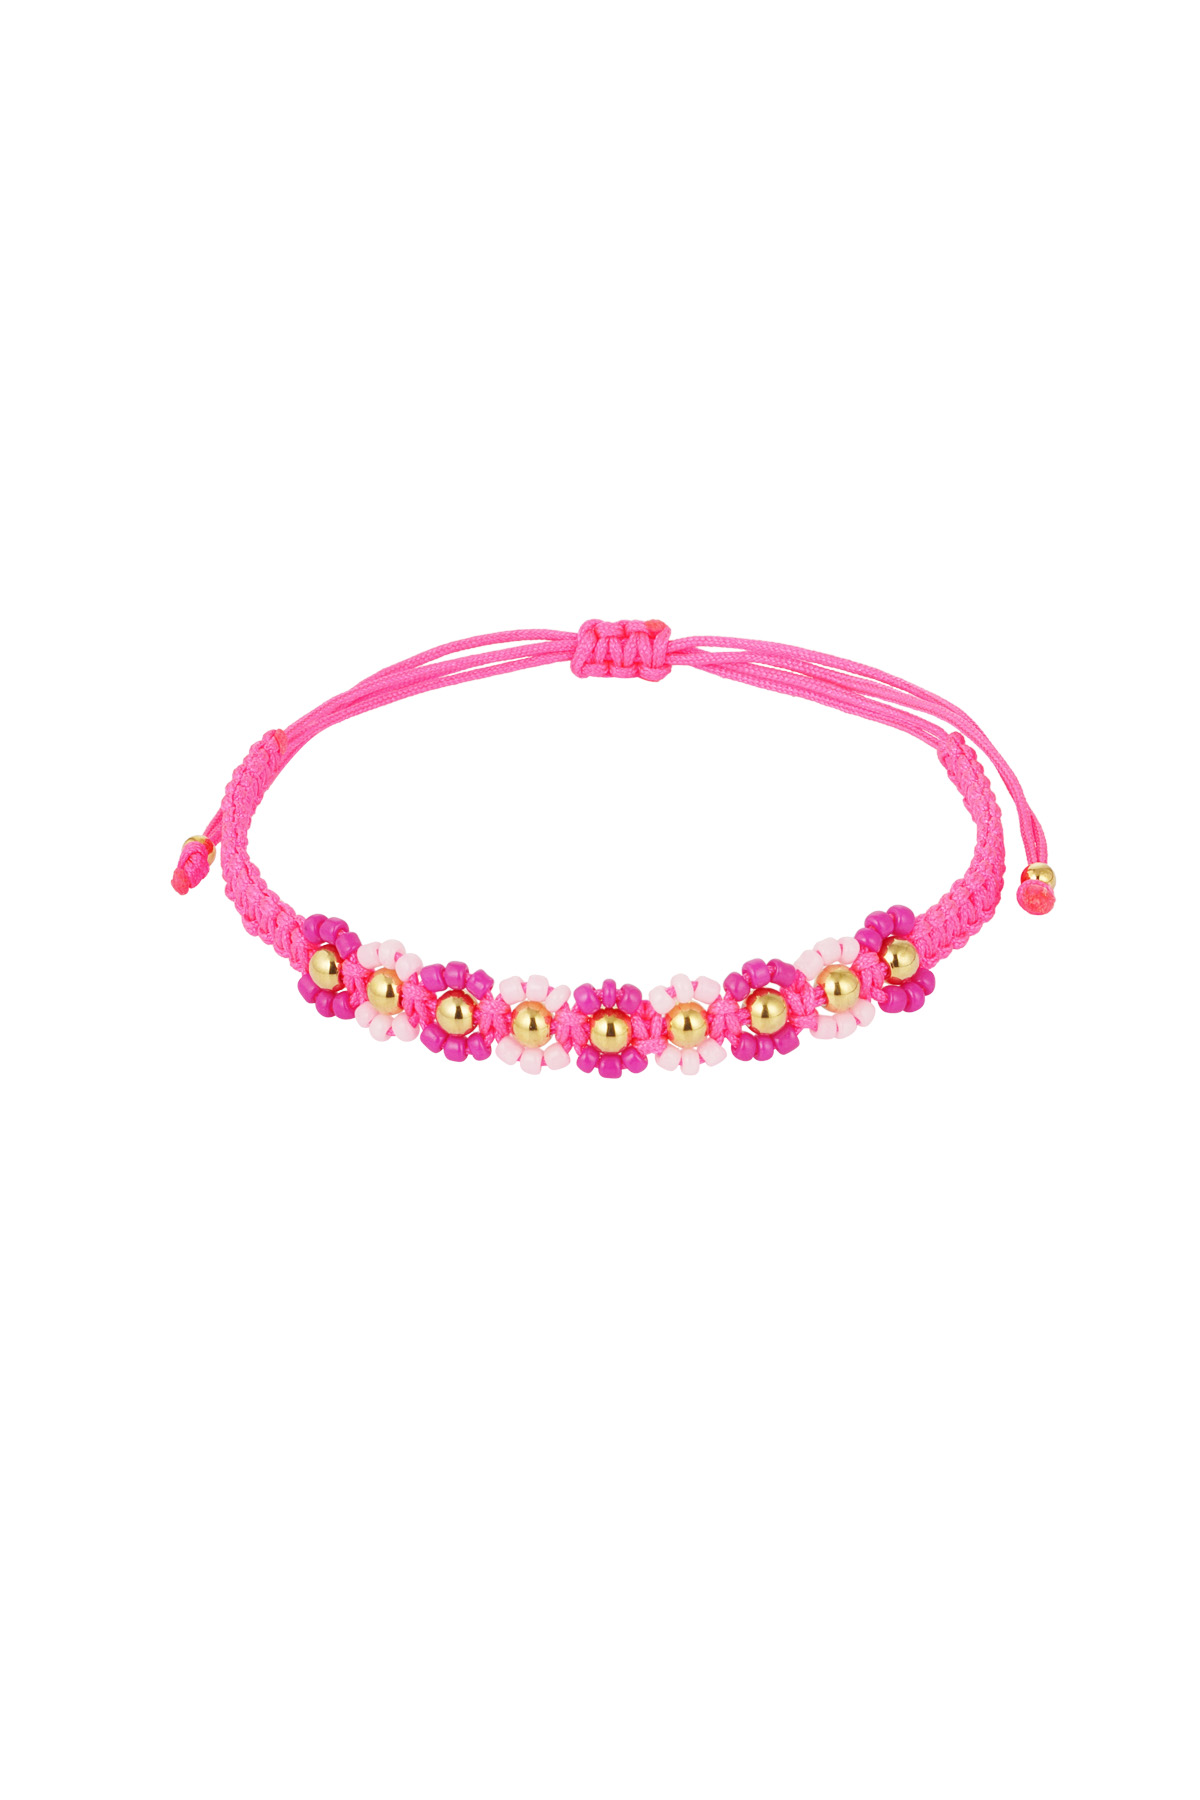 Summer flower party bracelet - fuchsia